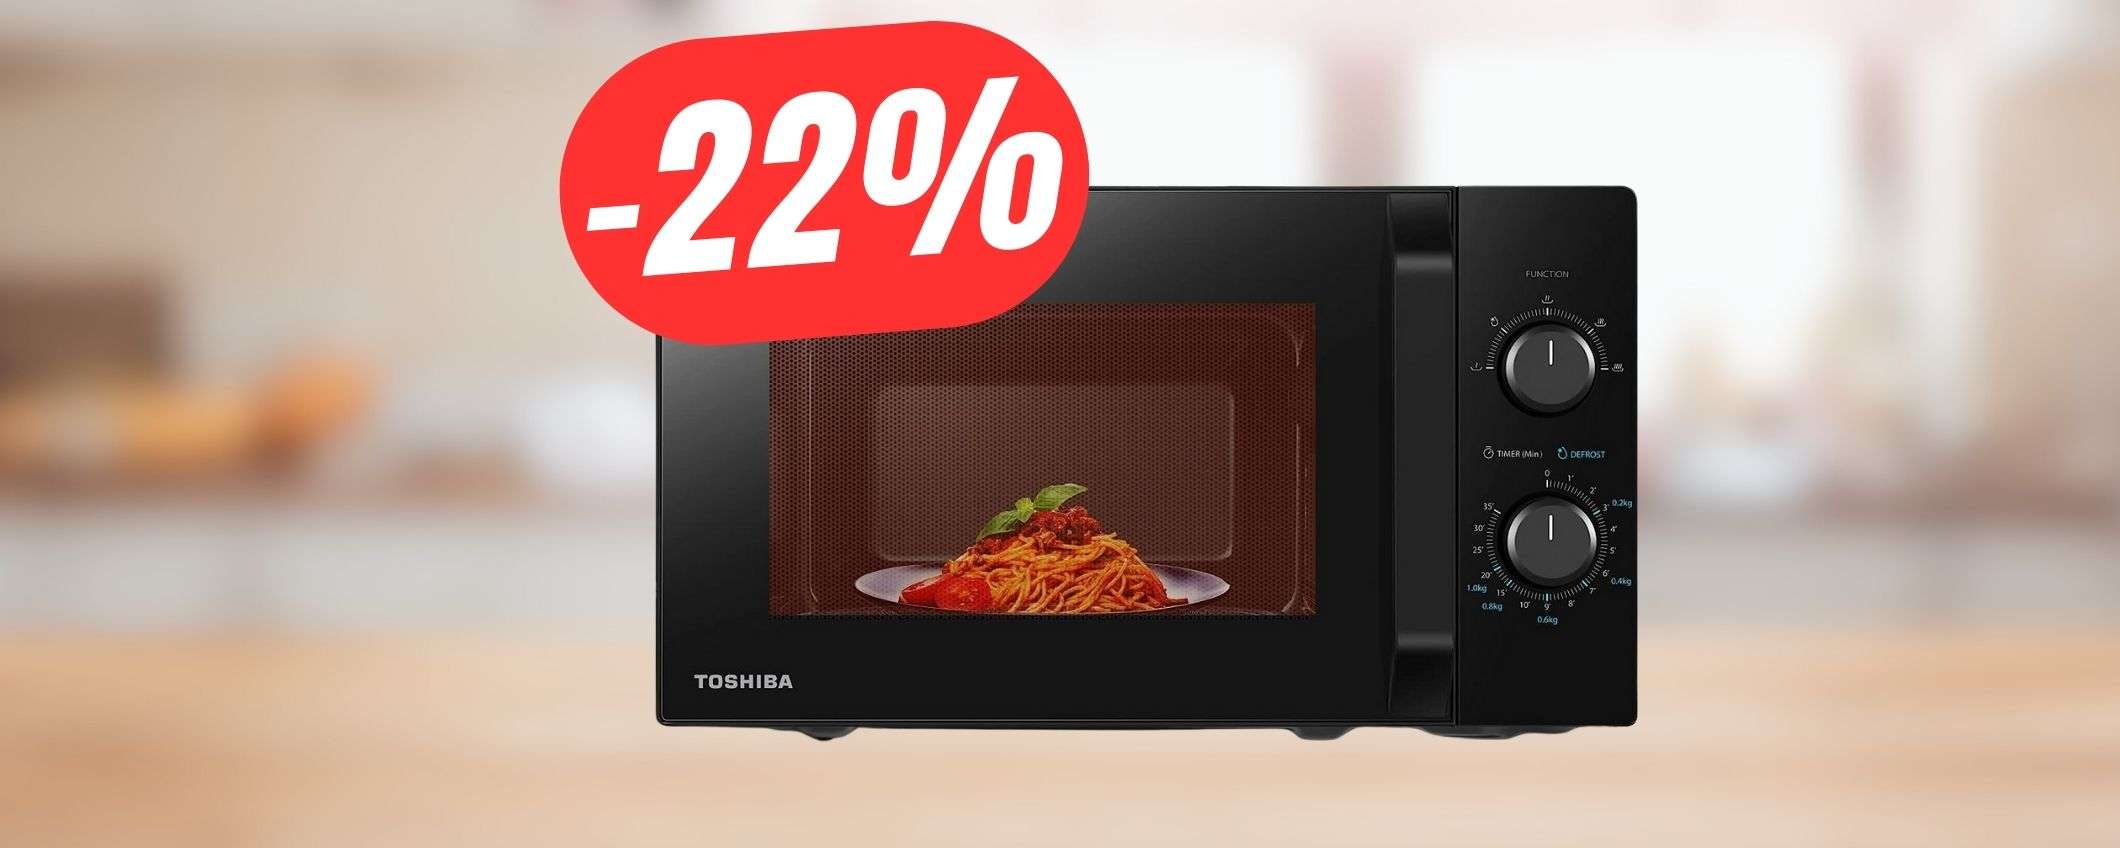 PREZZO BOMBA per il forno a MICROONDE di Toshiba a 69€